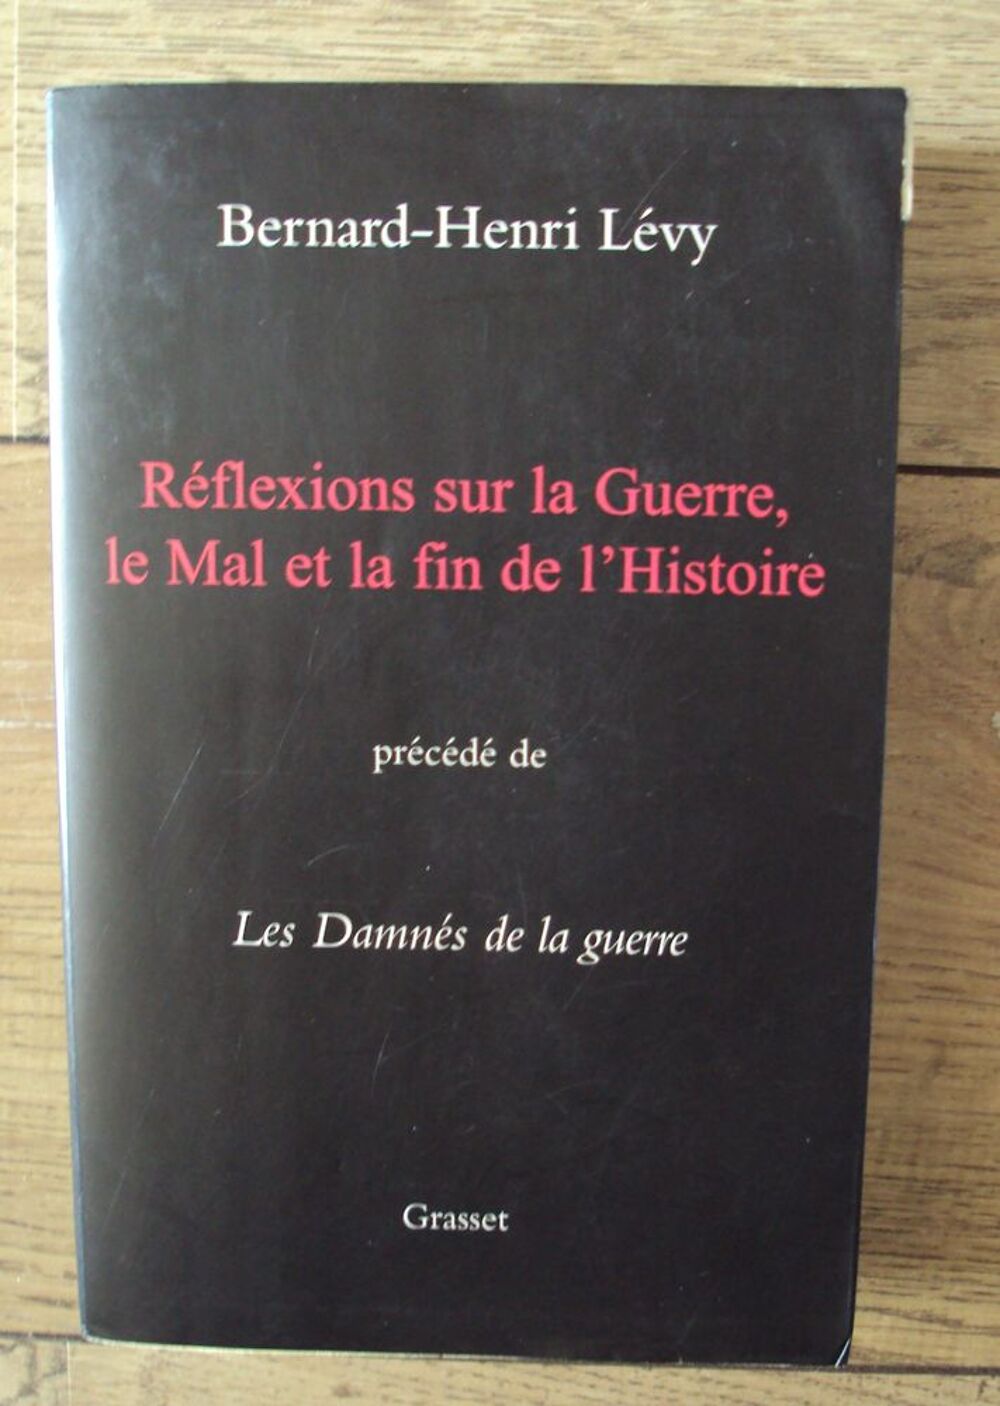 R&eacute;flexion sur la Guerre (Bernard-Henri L&eacute;vy)
Livres et BD